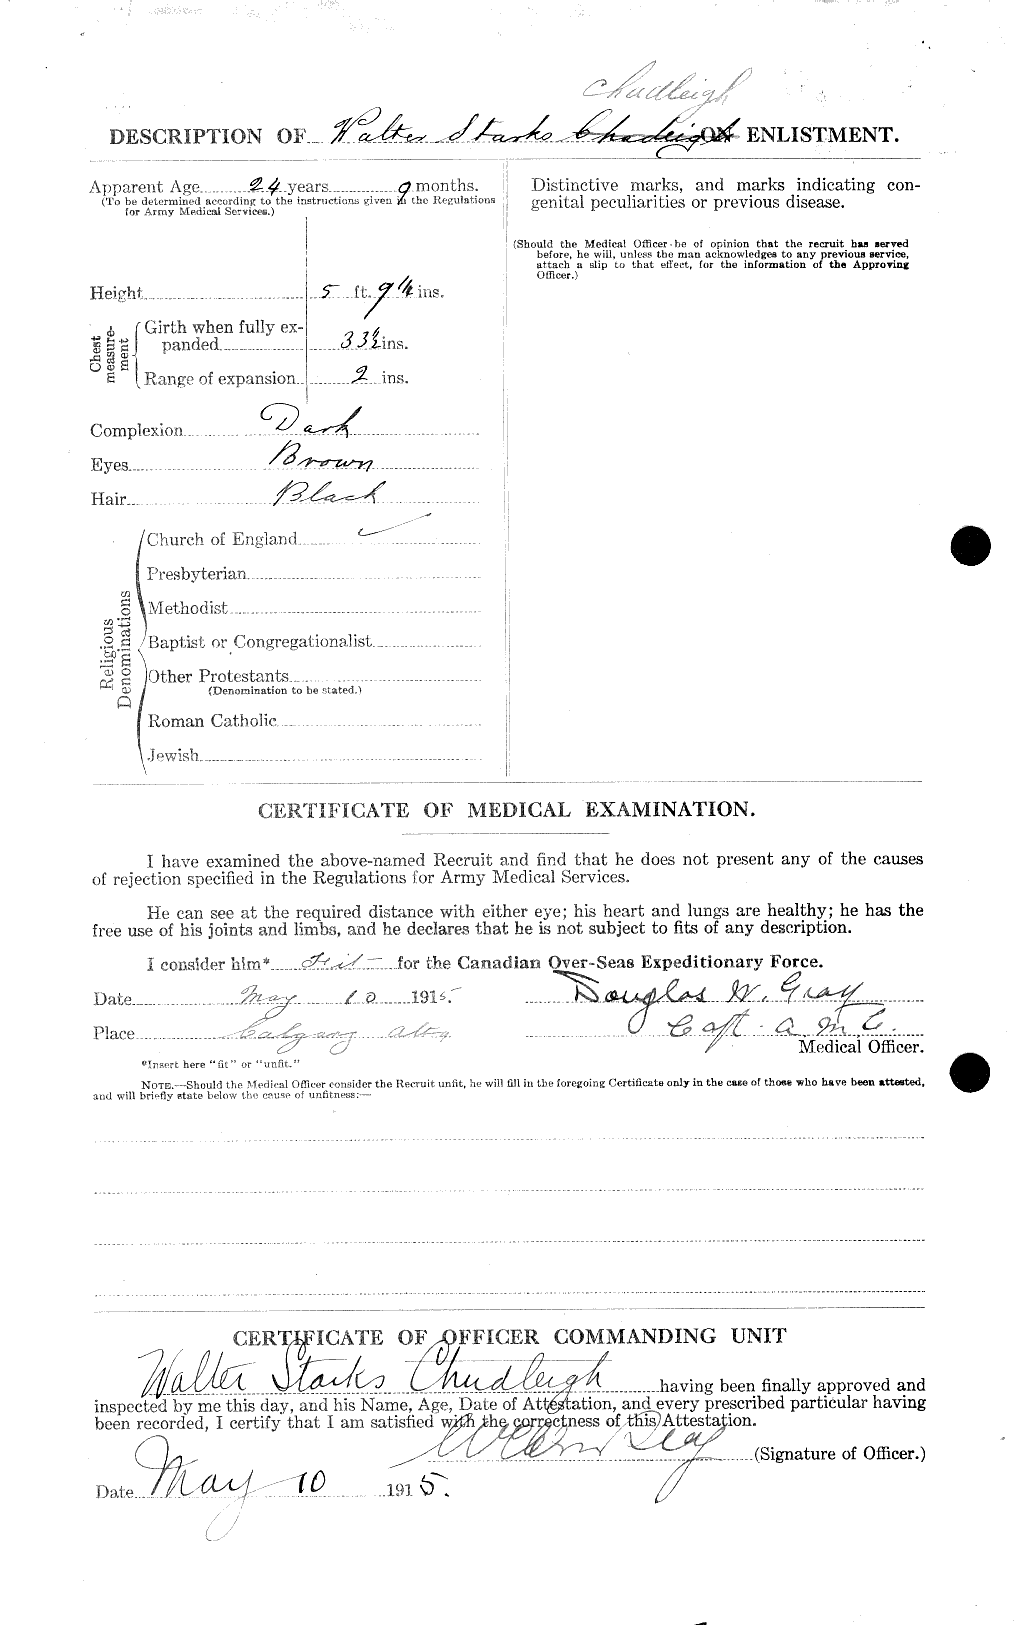 Dossiers du Personnel de la Première Guerre mondiale - CEC 022300b